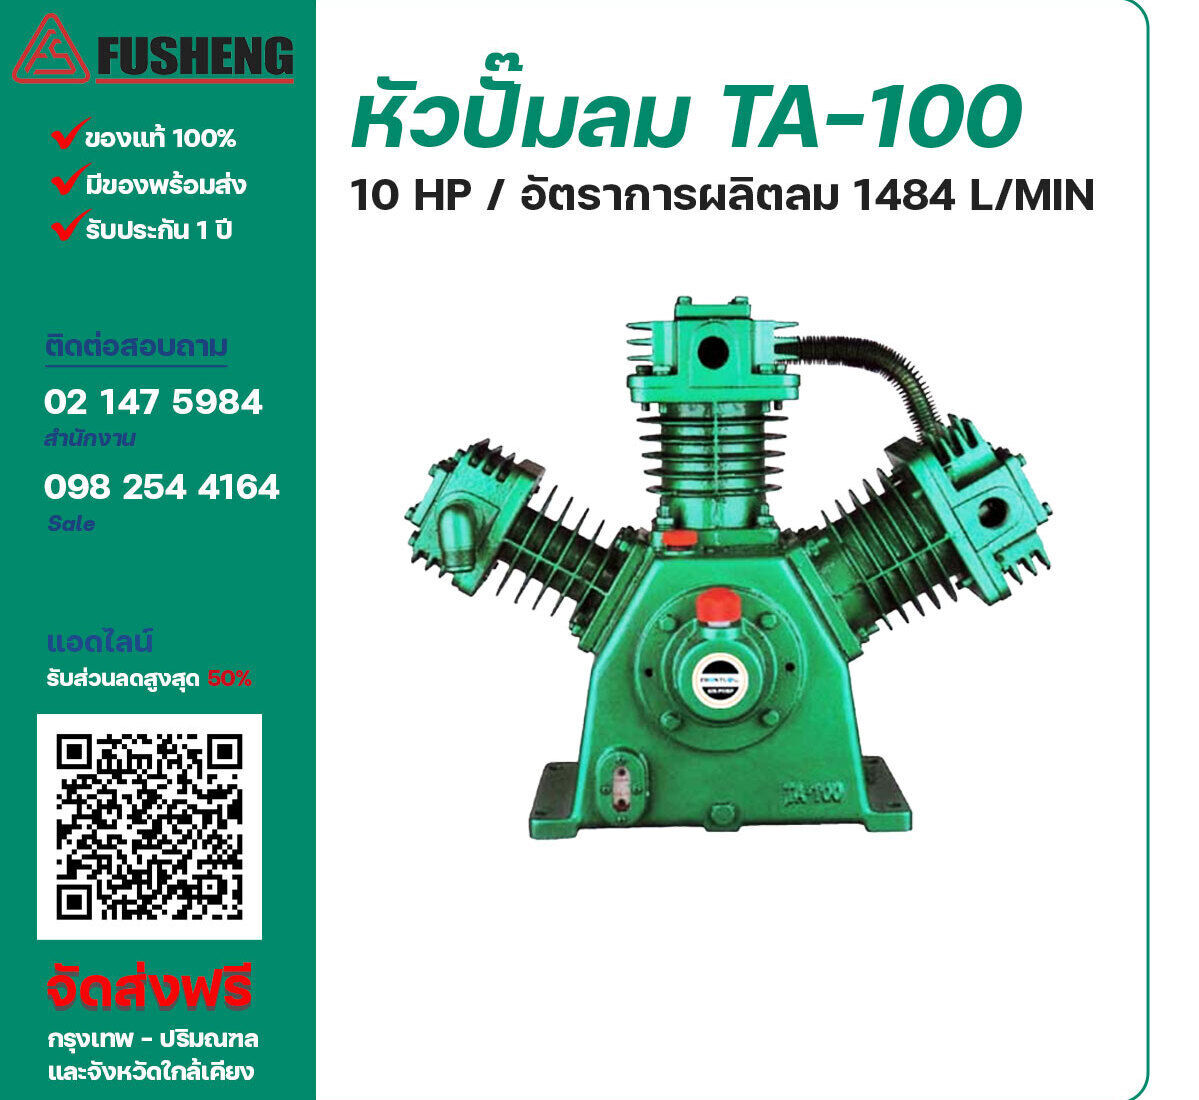 จำหน่ายหัวปั๊มลมฟูเช็ง ของแท้ 100% FUSHENG Bare Compressor รุ่น TA-100 ขนาด 10 แรงม้า อัตราการผลิตลม 1,484 ลิตร / นาที รับประกัน 3 เดือน ตามเงื่อนไขของบริษัทฯ จัดส่งฟรี กรุงเทพ-ปริมณฑล